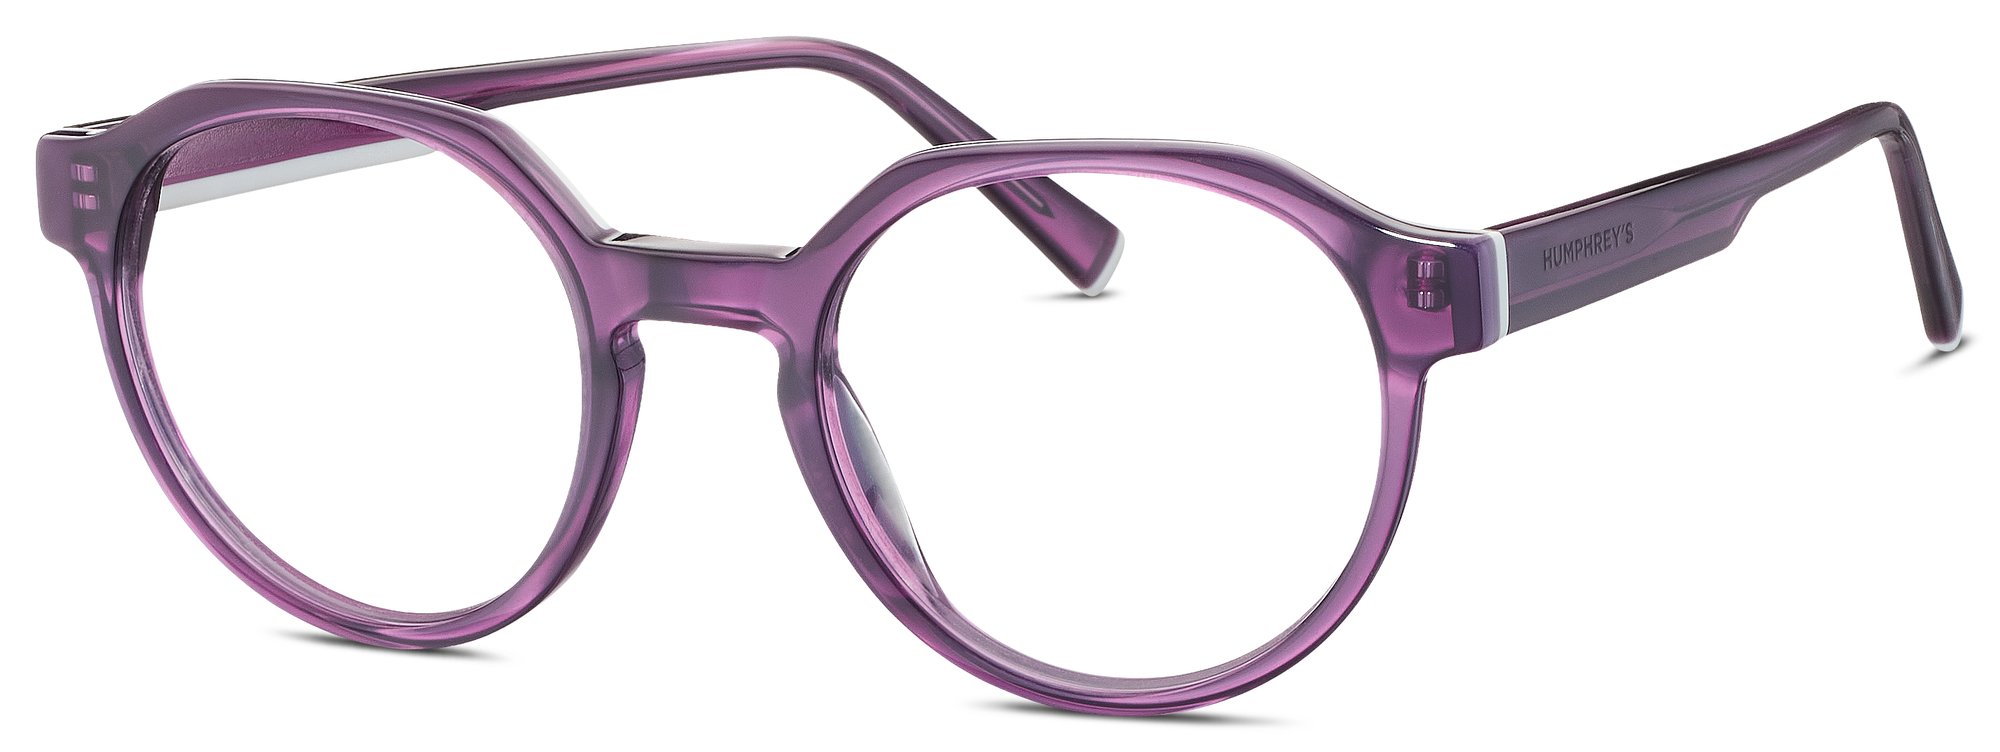 Das Bild zeigt die Korrektionsbrille 583152 50 von der Marke Humphrey‘s in lila.